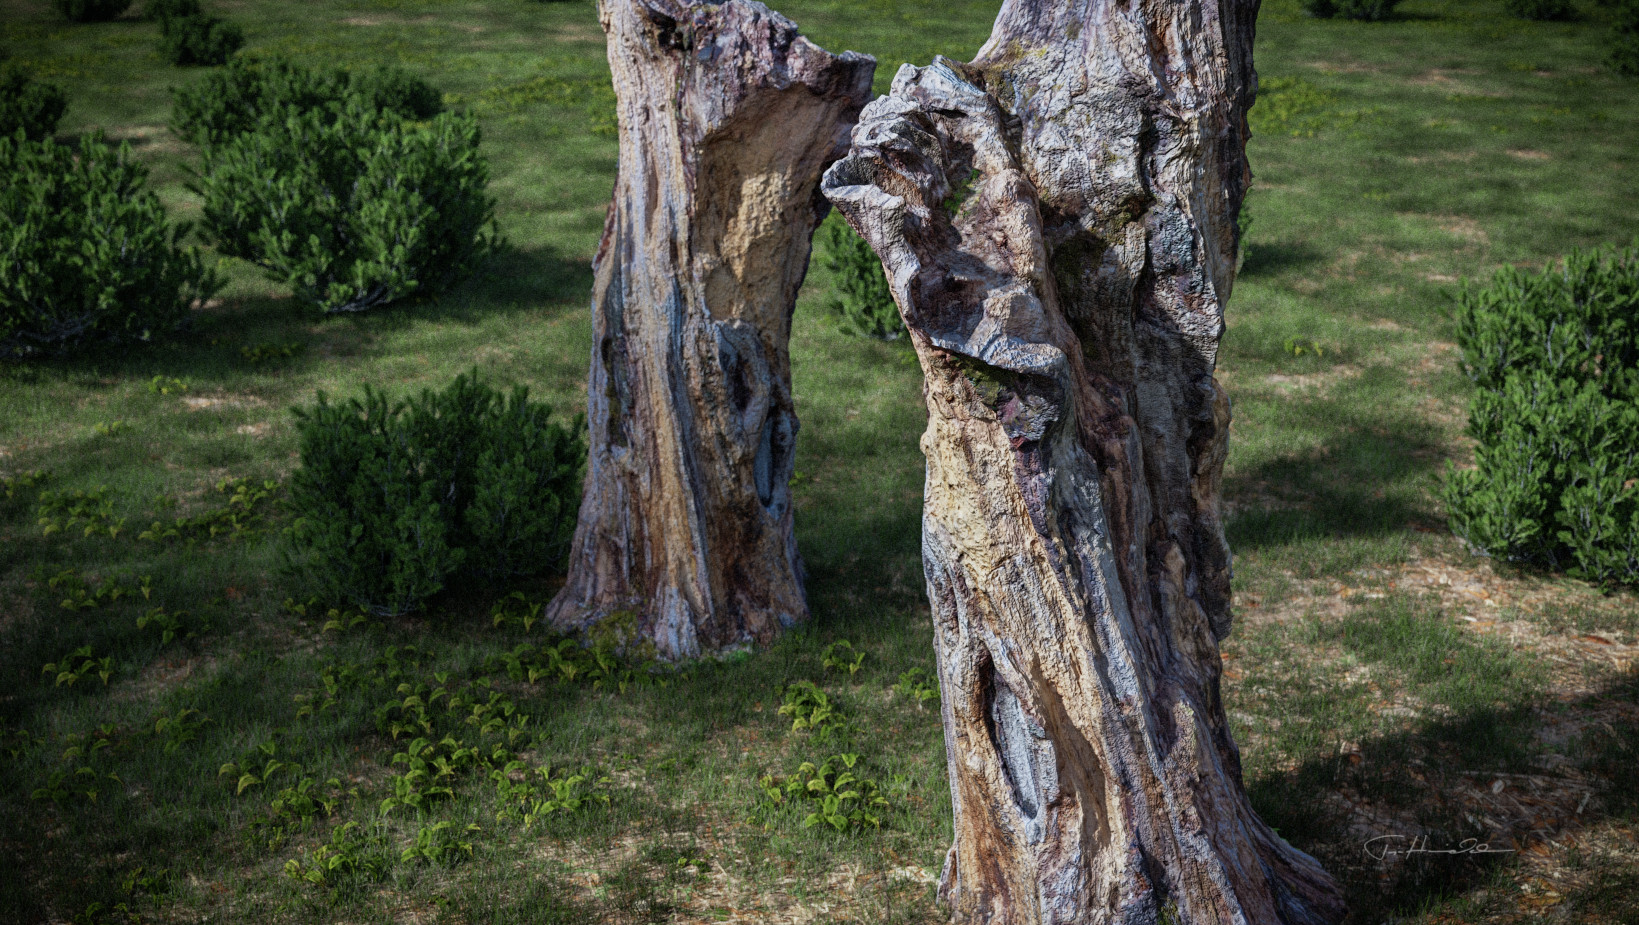 Tree stump - 01c.jpg